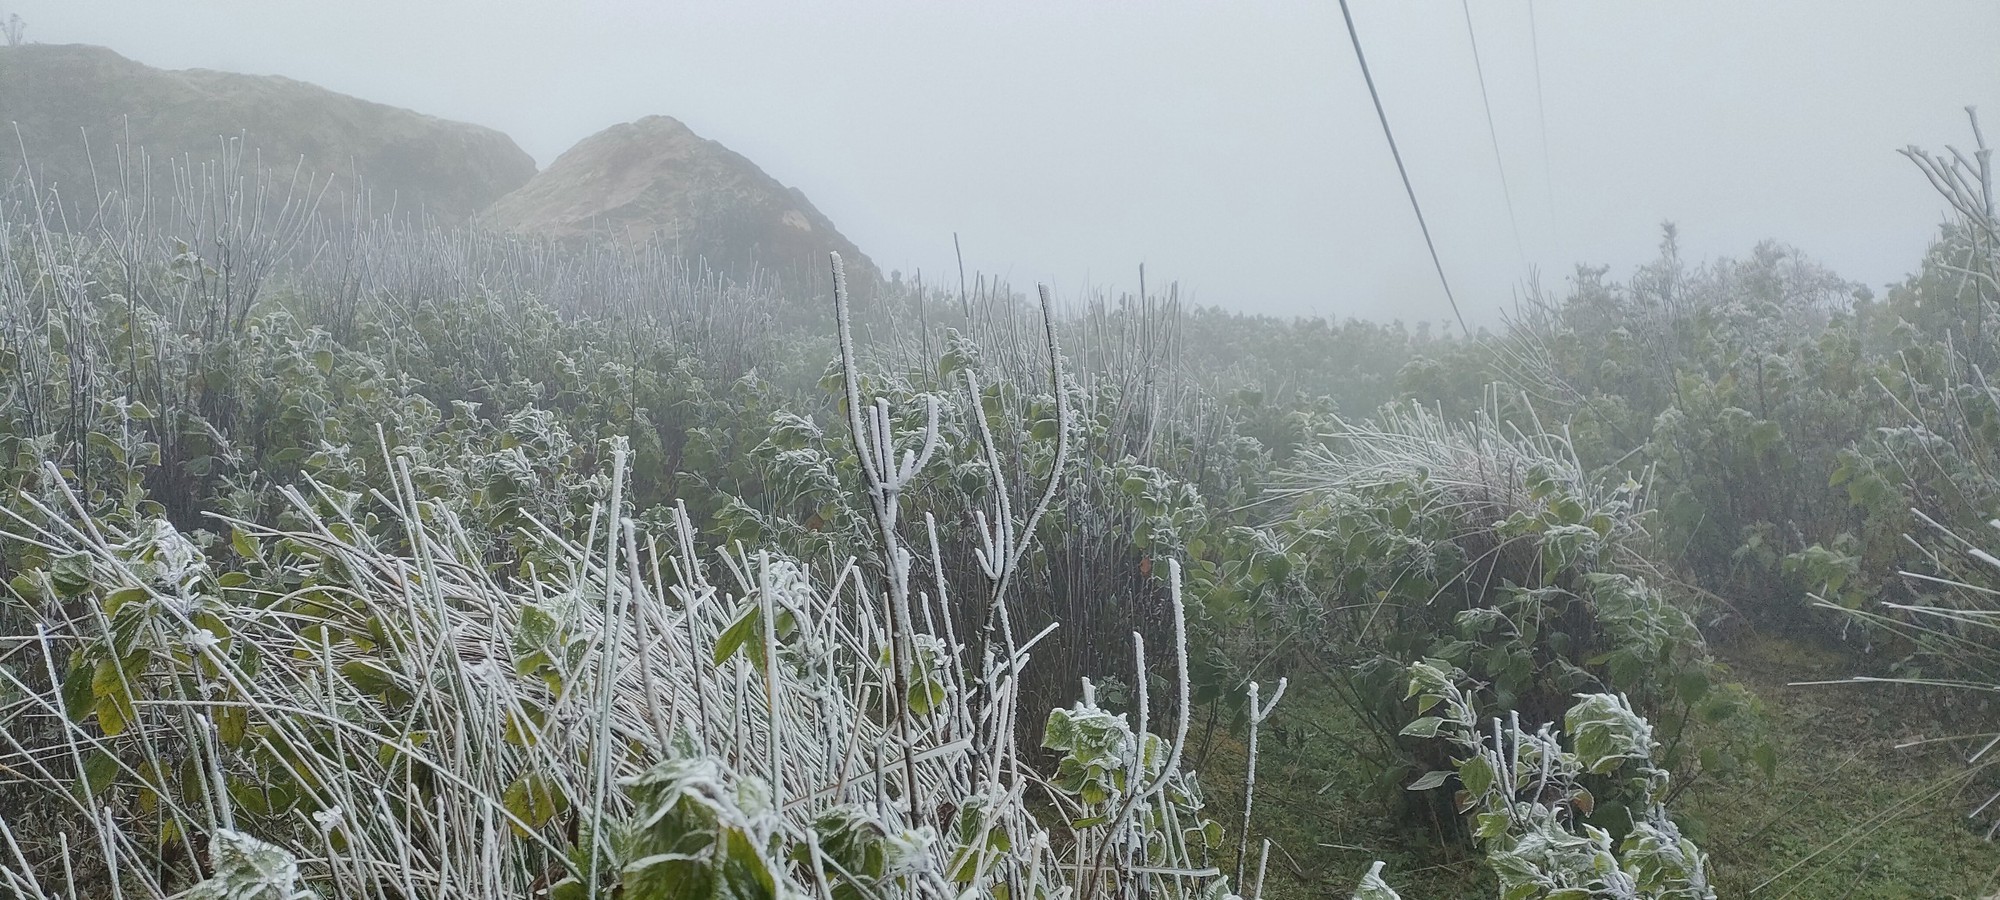 Xuất hiện băng giá trên các đỉnh núi cao ở Lào Cai, Yên Bái- Ảnh 3.